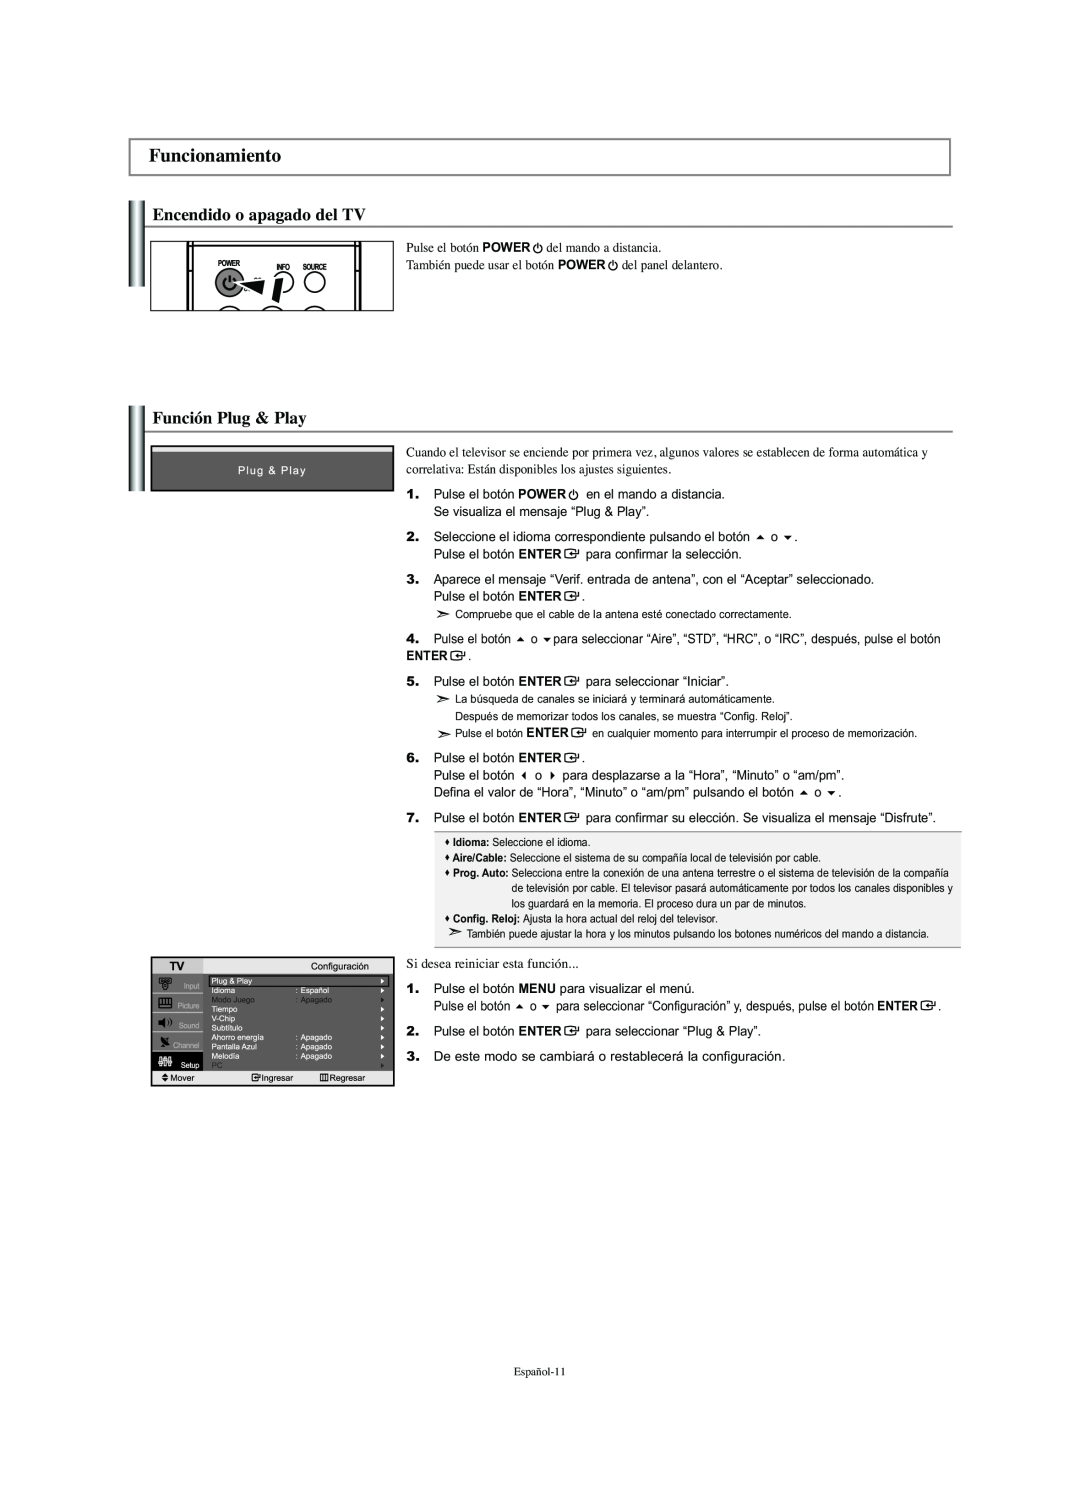 Samsung LN-S2341W manual Funcionamiento, Encendido o apagado del TV, Función Plug & Play 